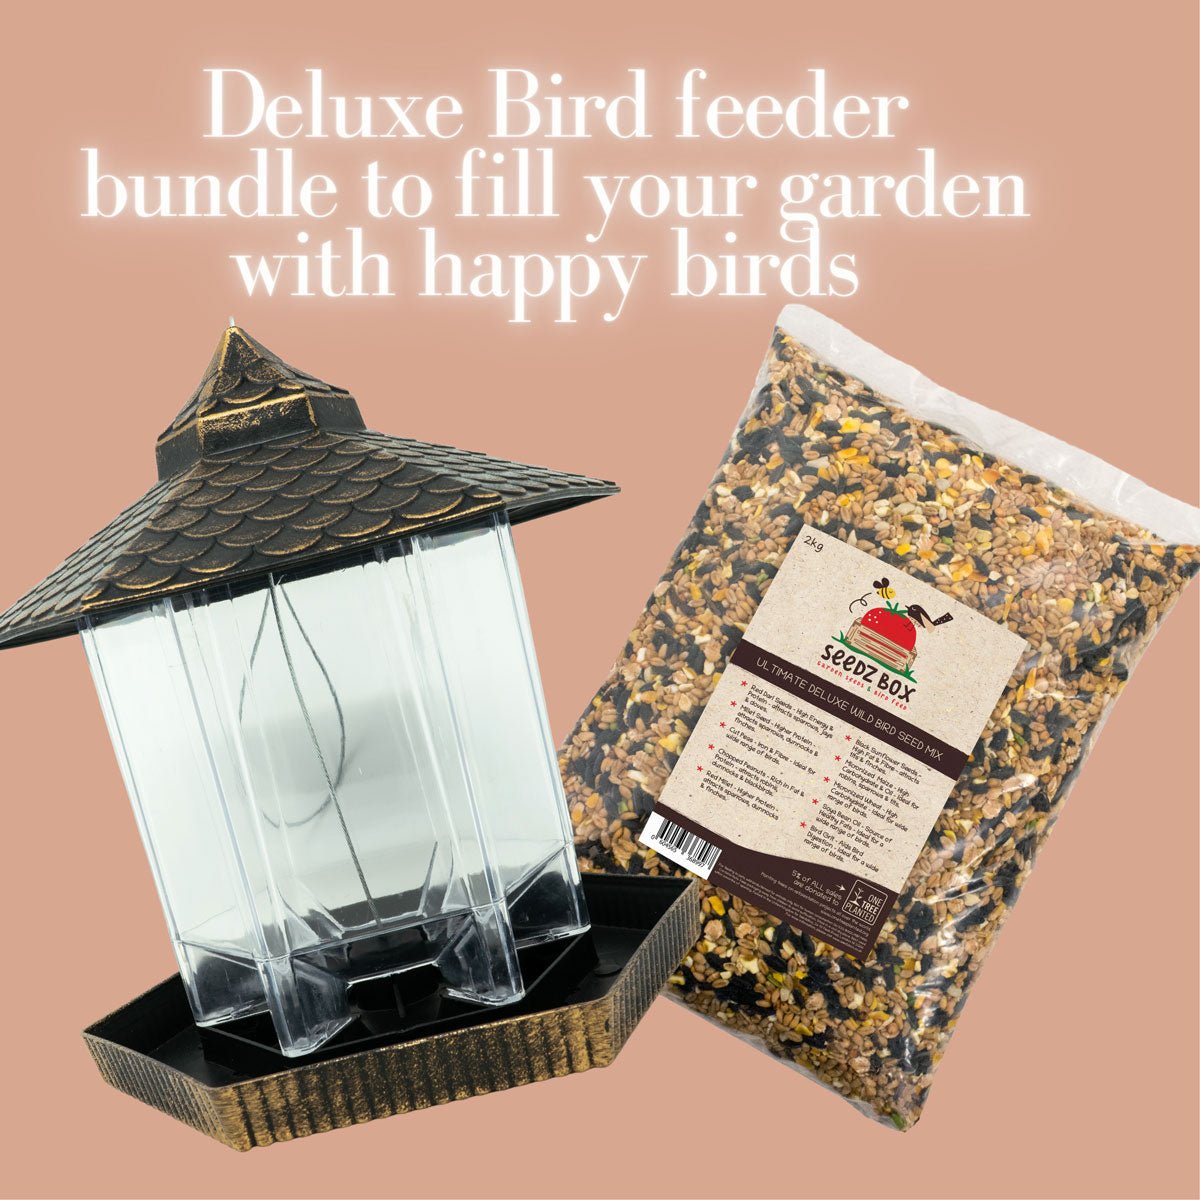 Deluxe Gazebo bird feeder & Ultimate bird food - Seedzbox5060910341544